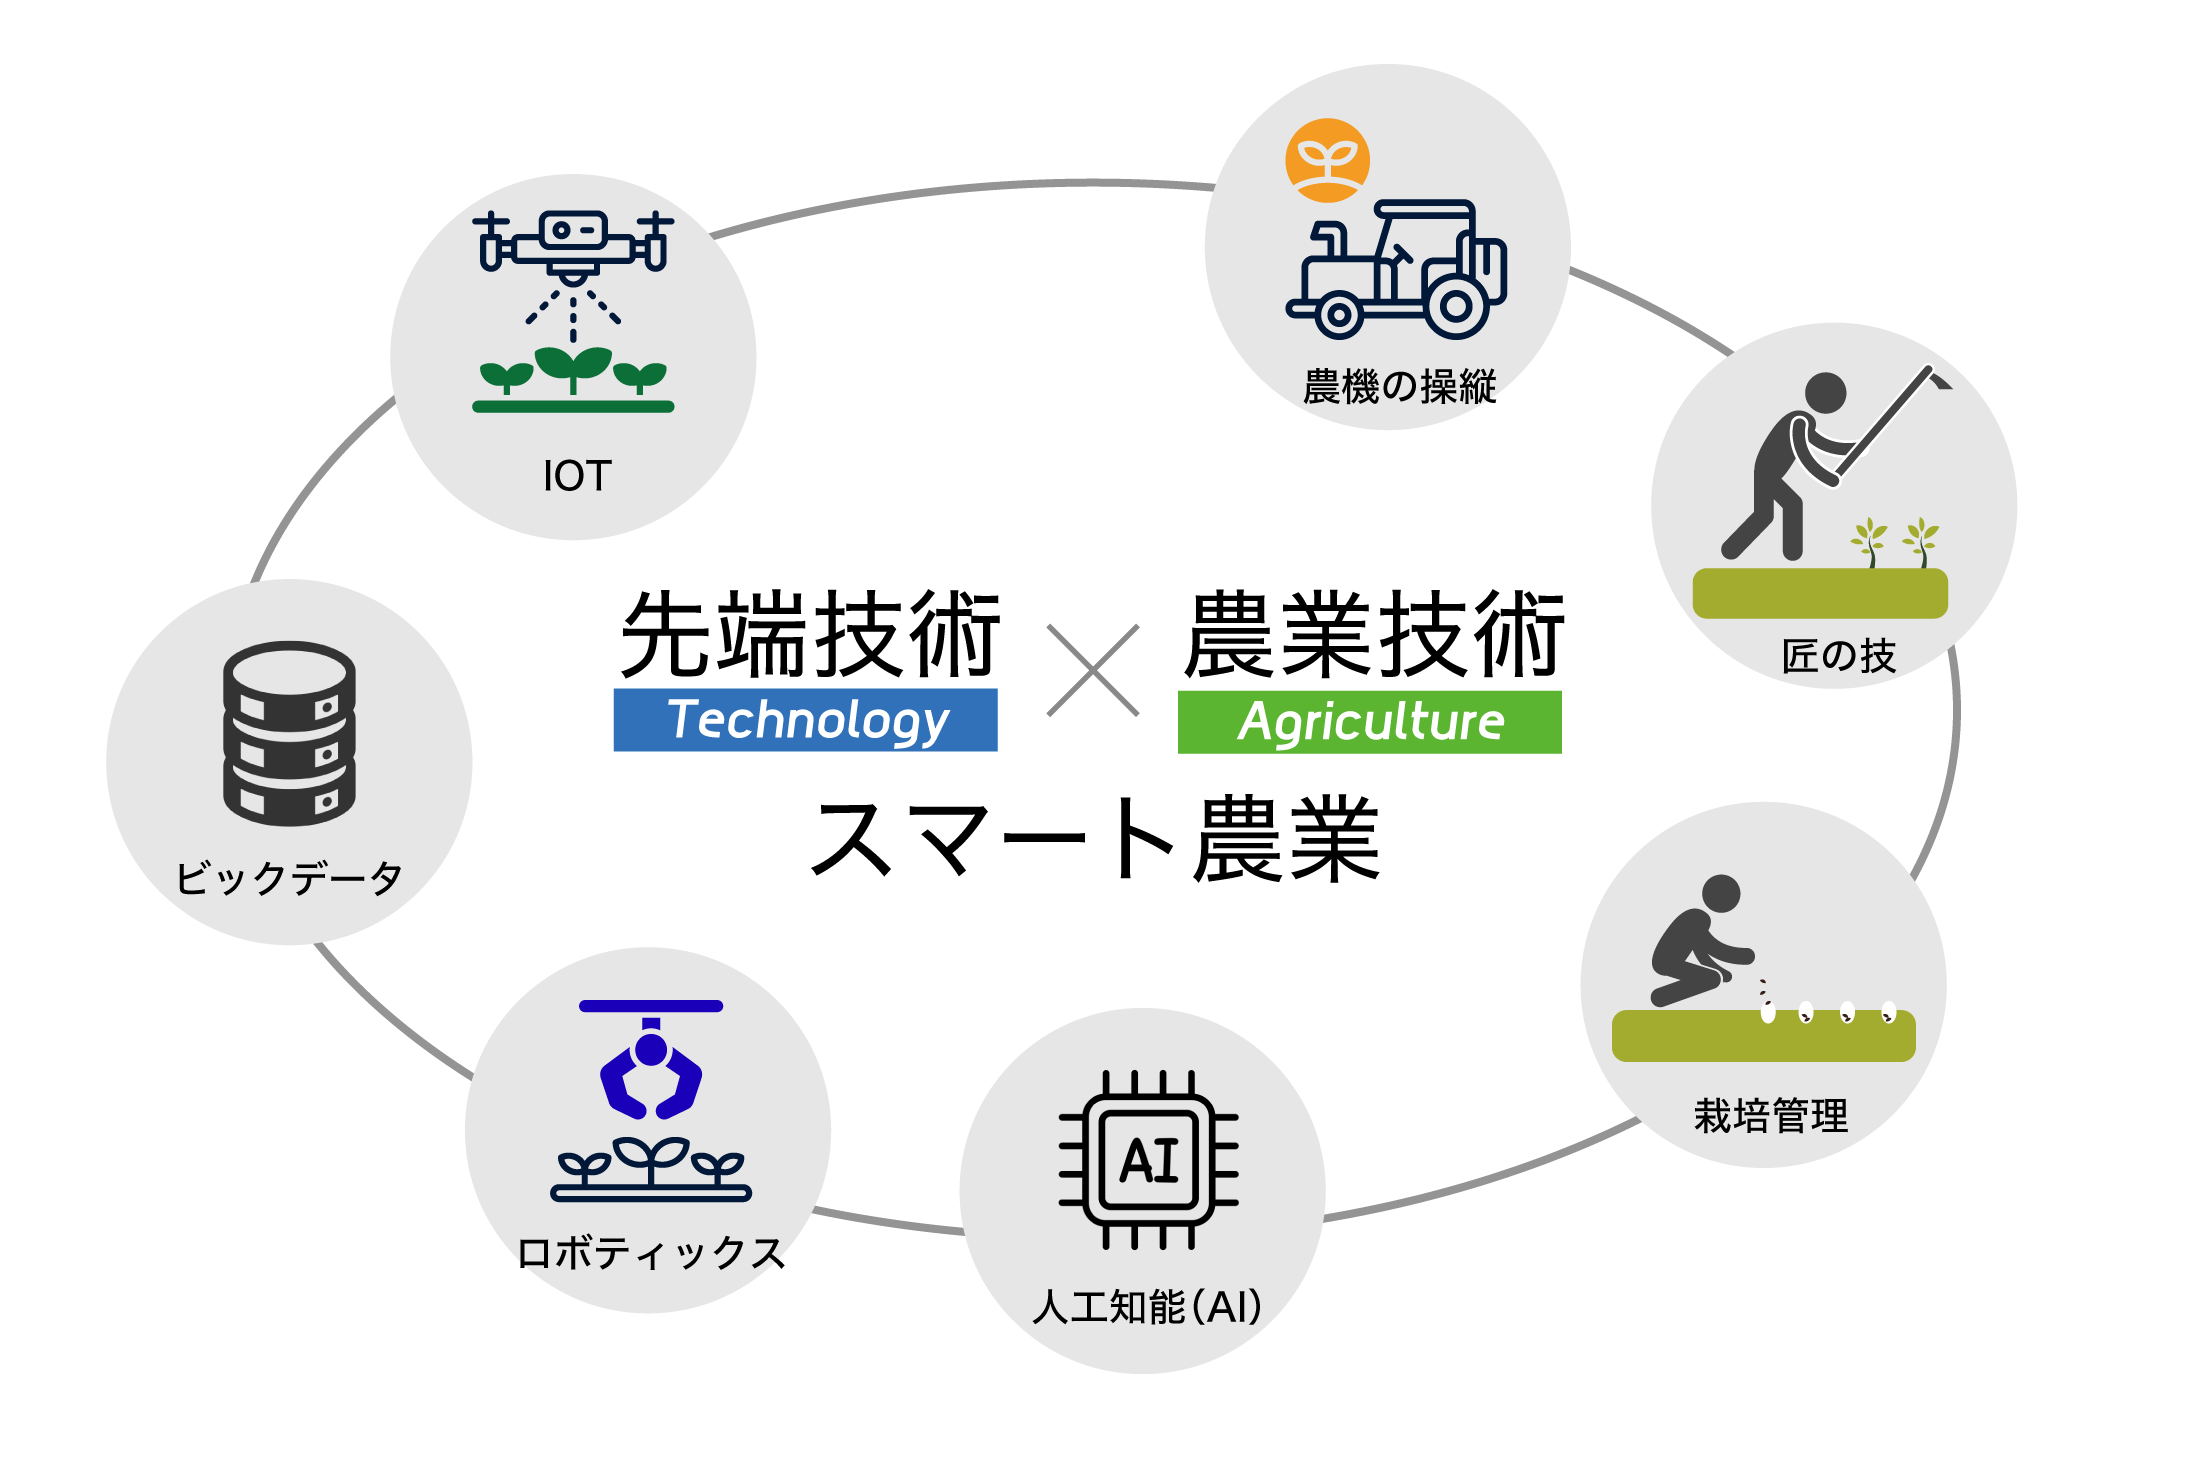 スマート農業 スマートアグリ IOT 農機の操縦 ビックデータ ロボティックス 人工知能AI 栽培管理 匠の技